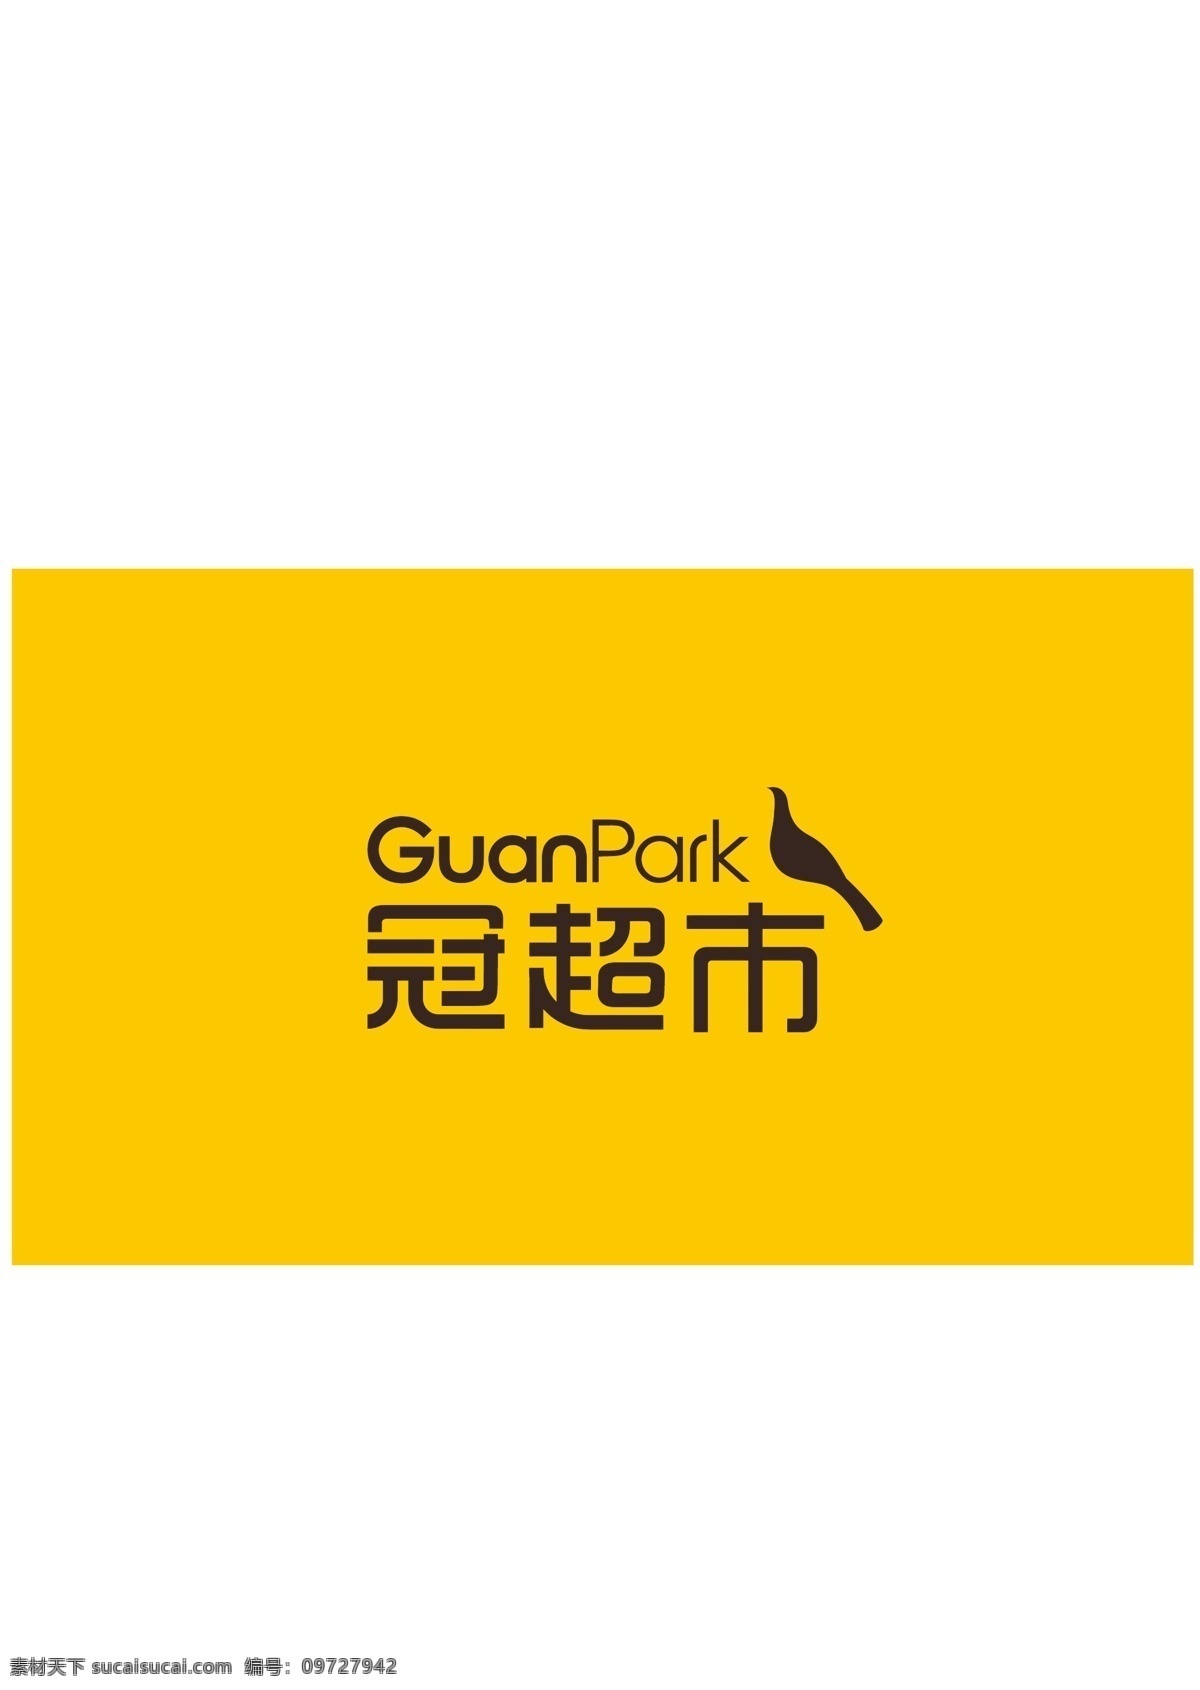 冠 超市 logo guanpark 冠超市 超市logo 超市标志 logo设计